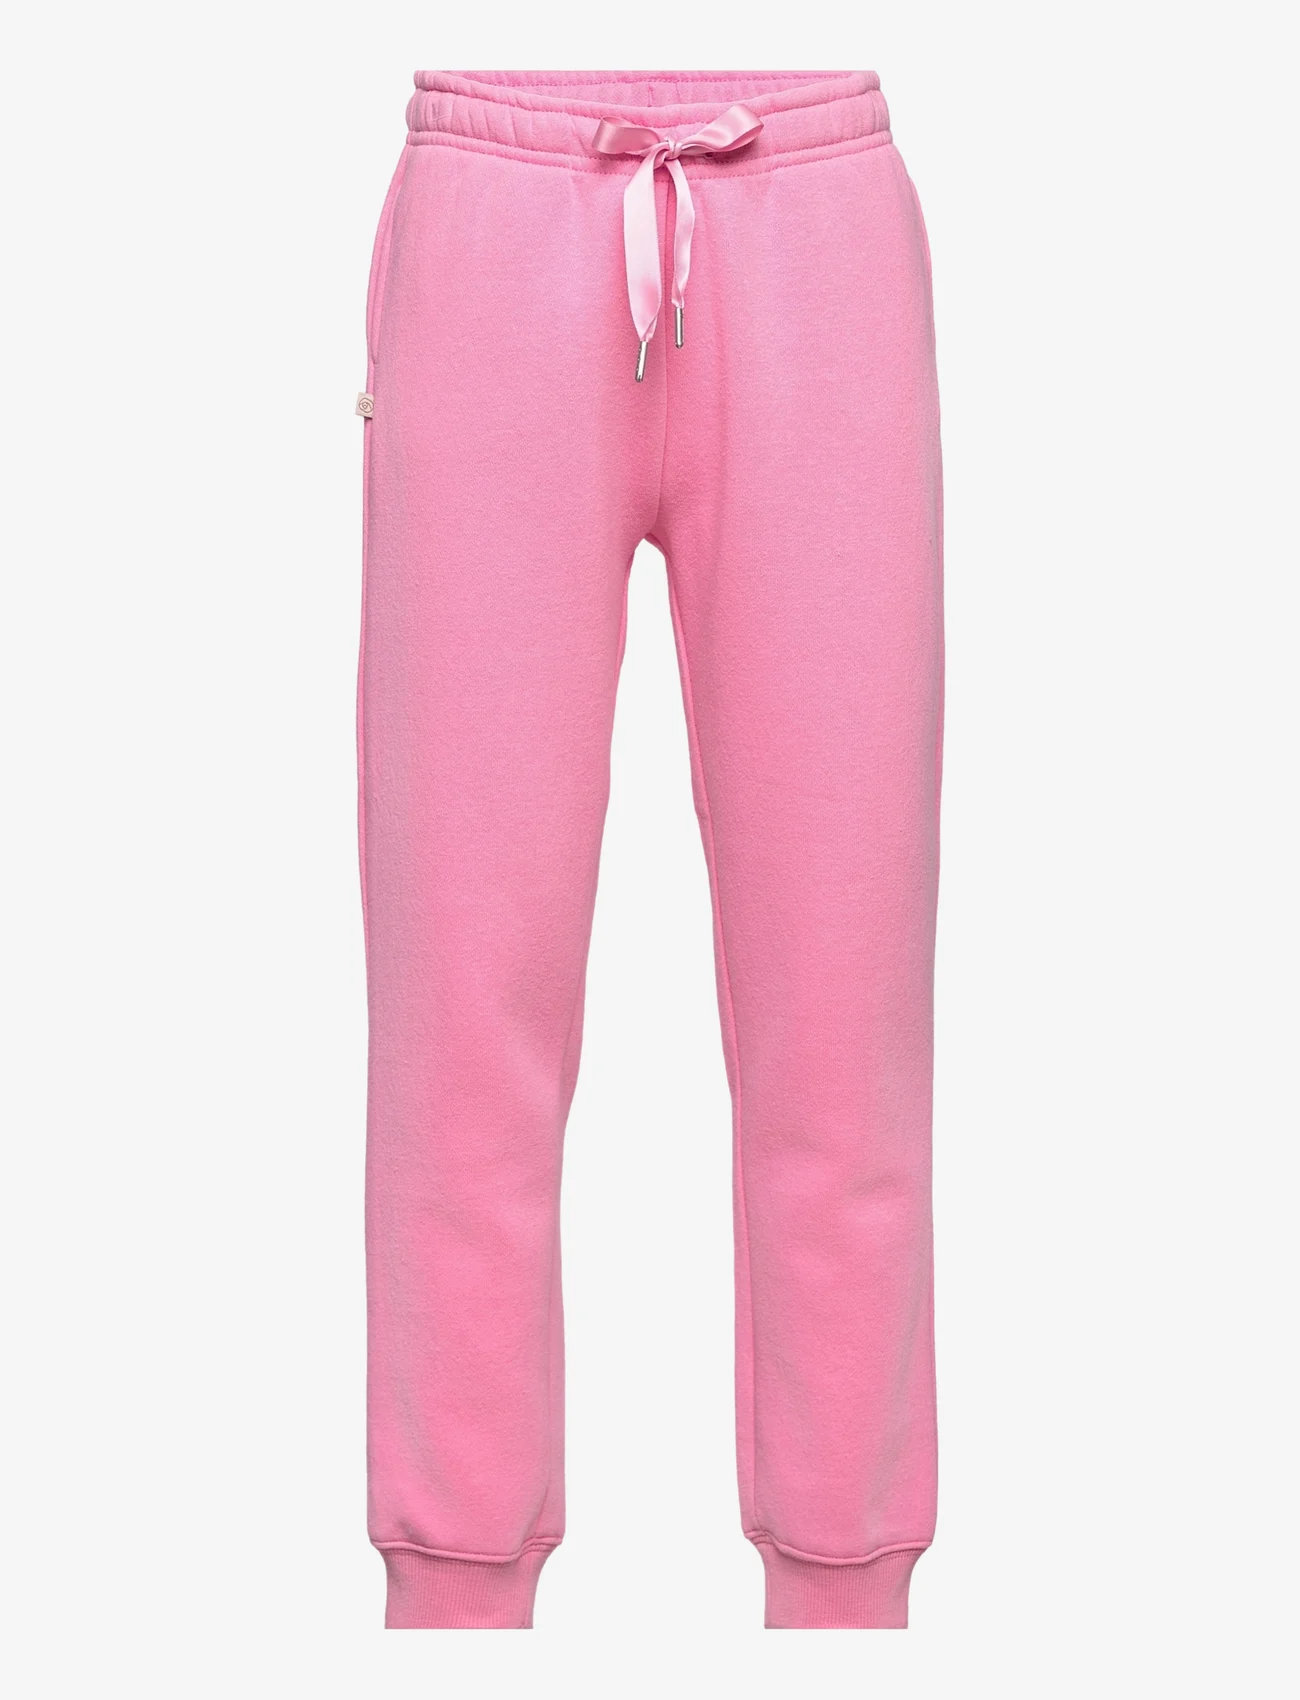 Rosemunde Kids - Trousers - madalaimad hinnad - bubblegum pink - 0